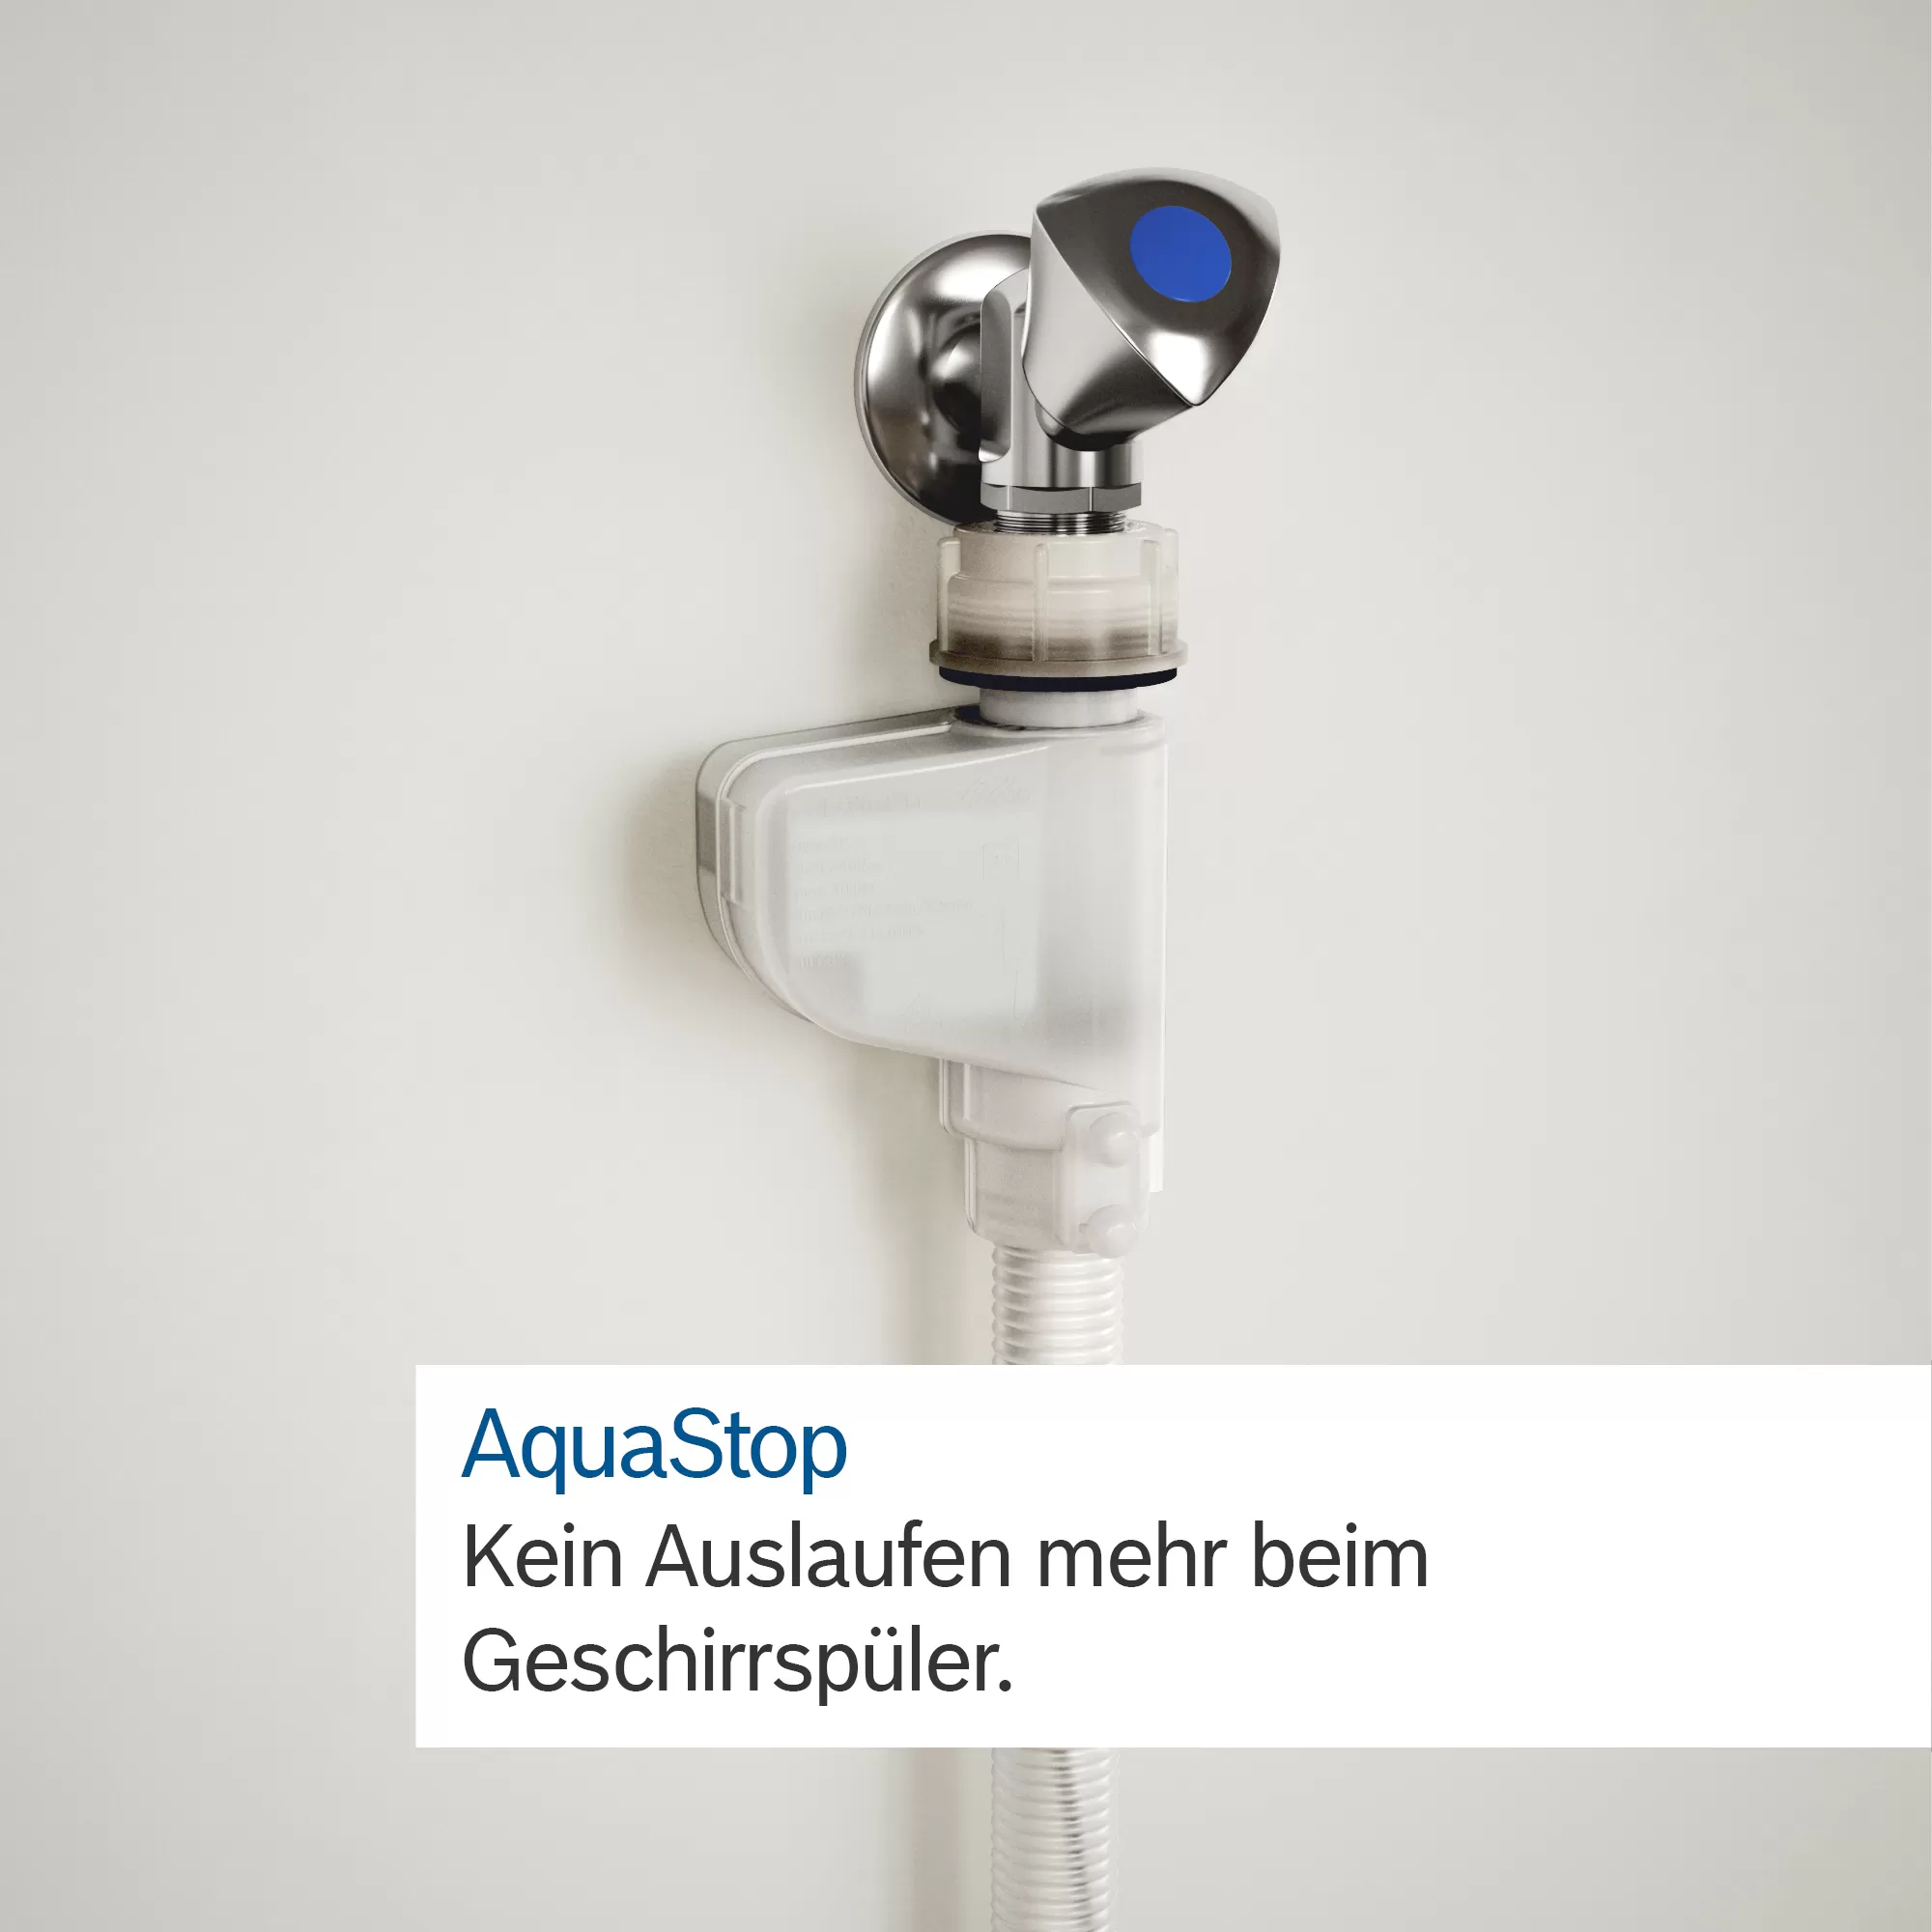 Công nghệ AquaStop chống rò rỉ nước một cách an toàn